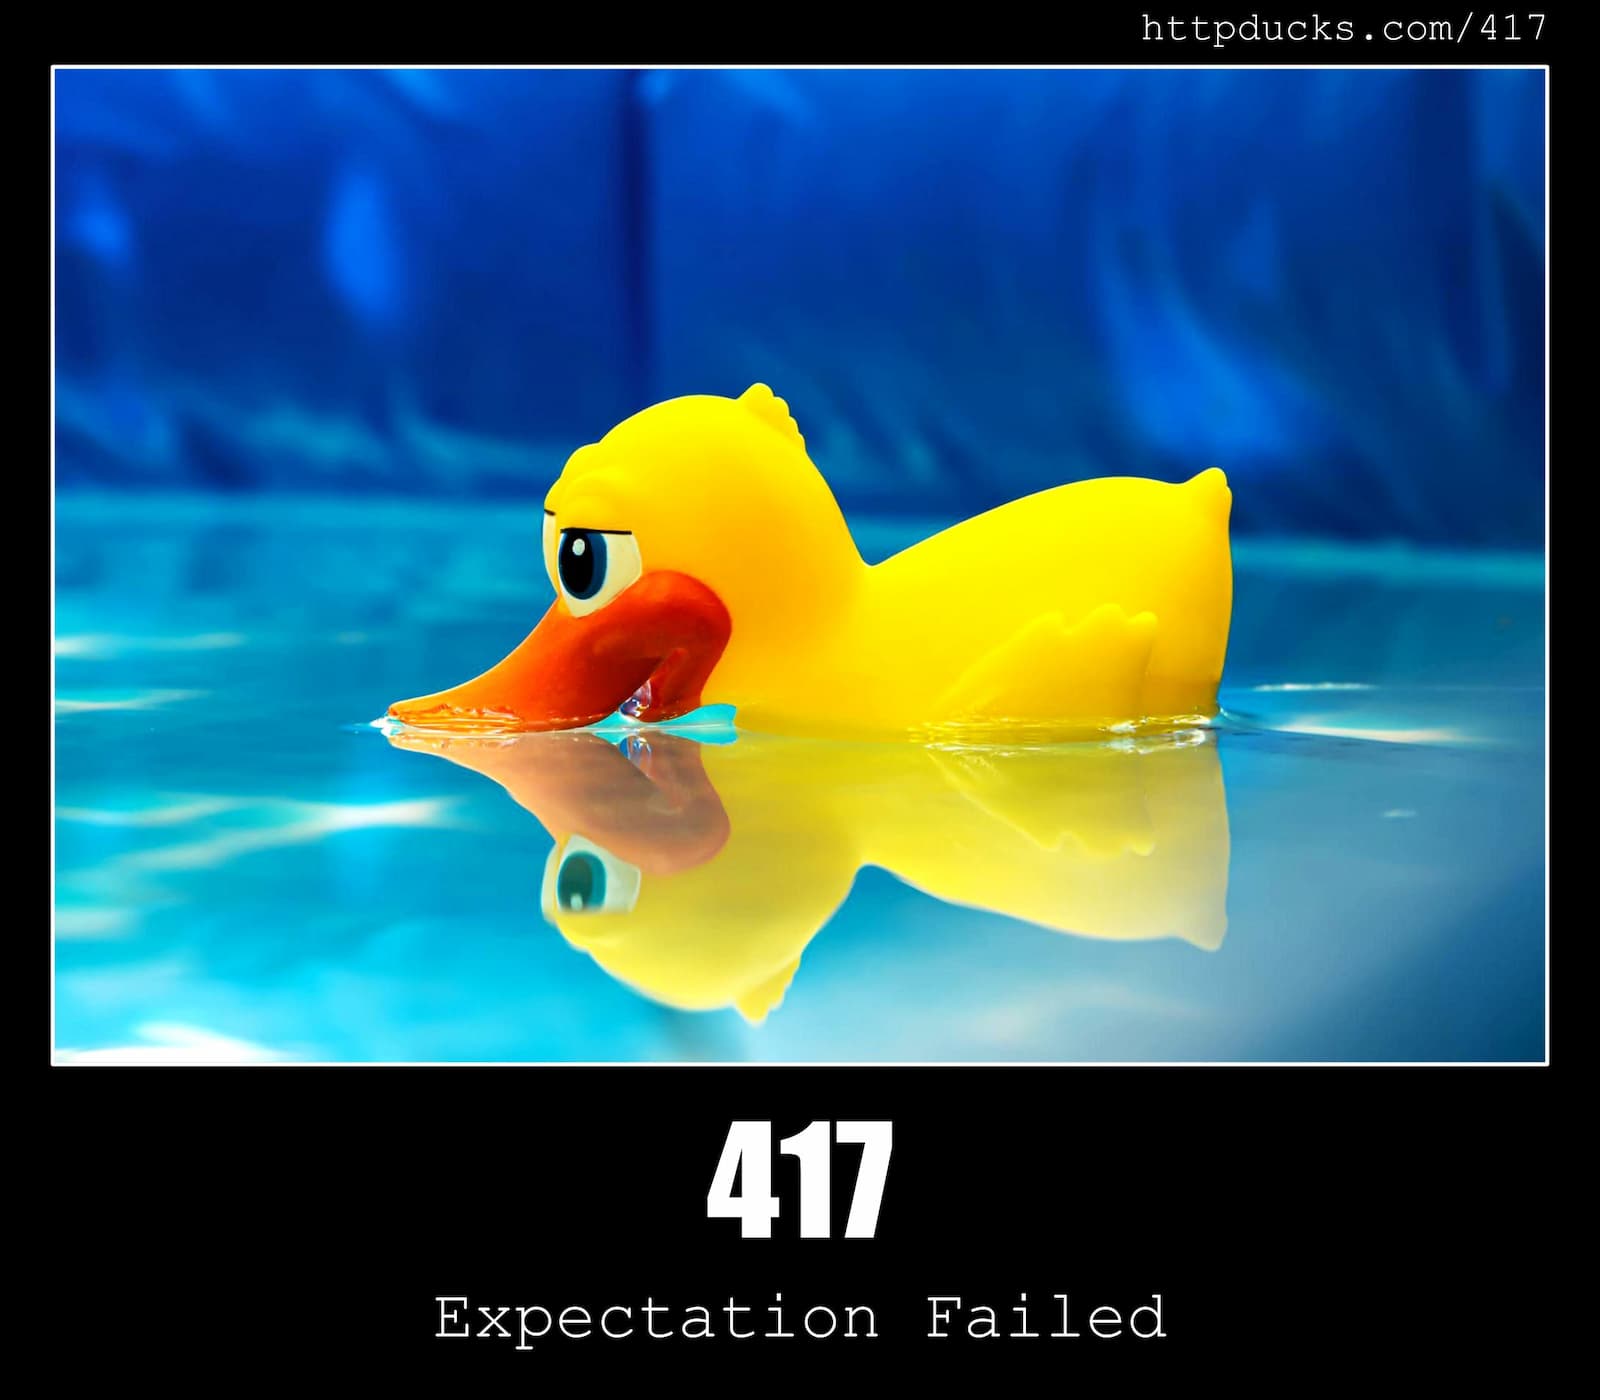 HTTP Status Code 417 Expectation Failed & Ducks